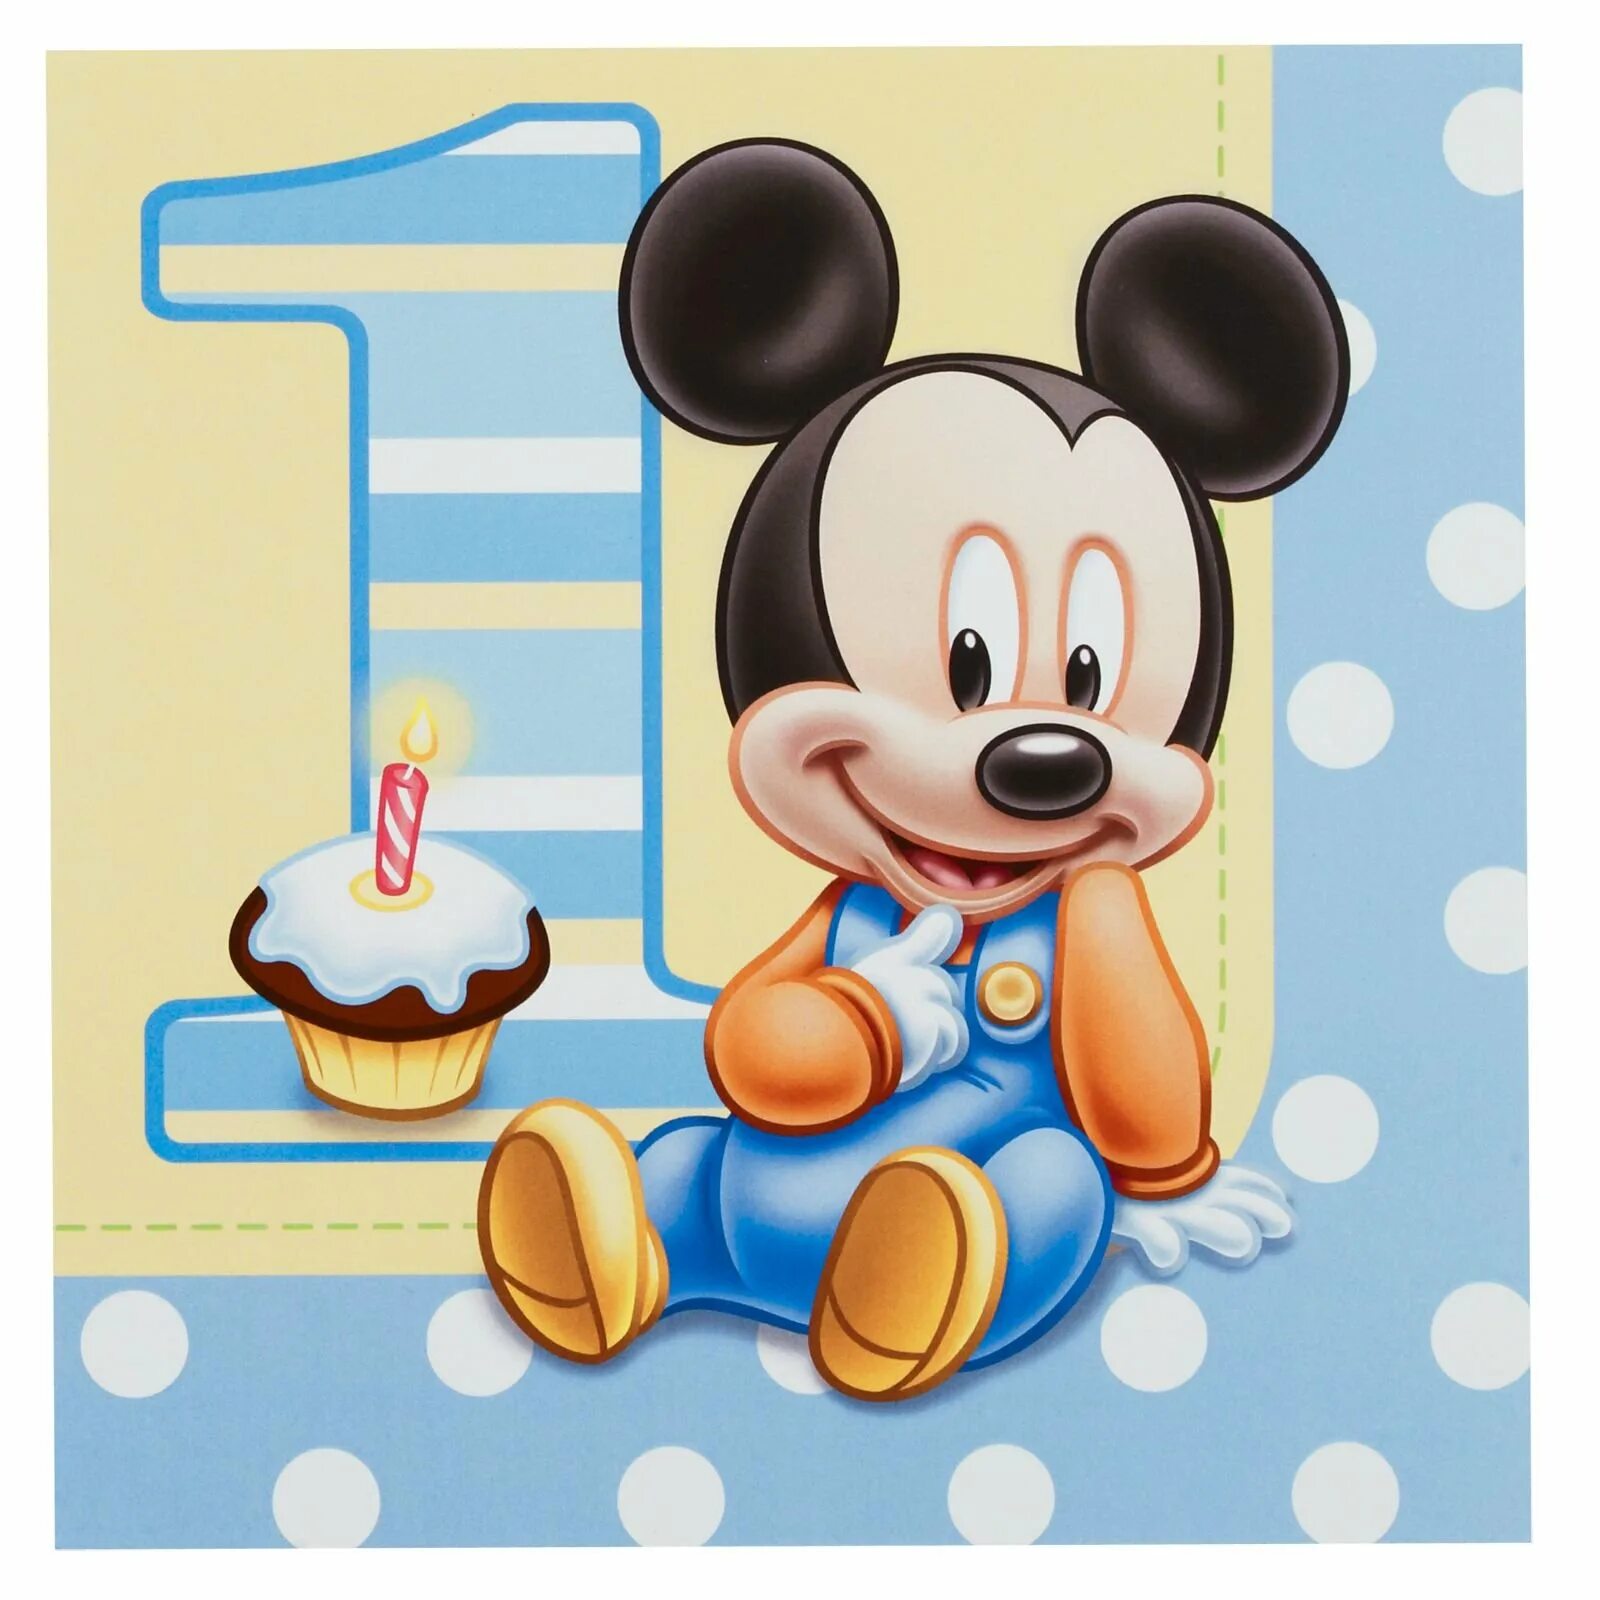 Поздравления с годом рождения ребенка. Микки Маус день рождения Микки. Микки Маус малыш. Микки Маус малыш 1 год. Микки Маус малыш в голубом.